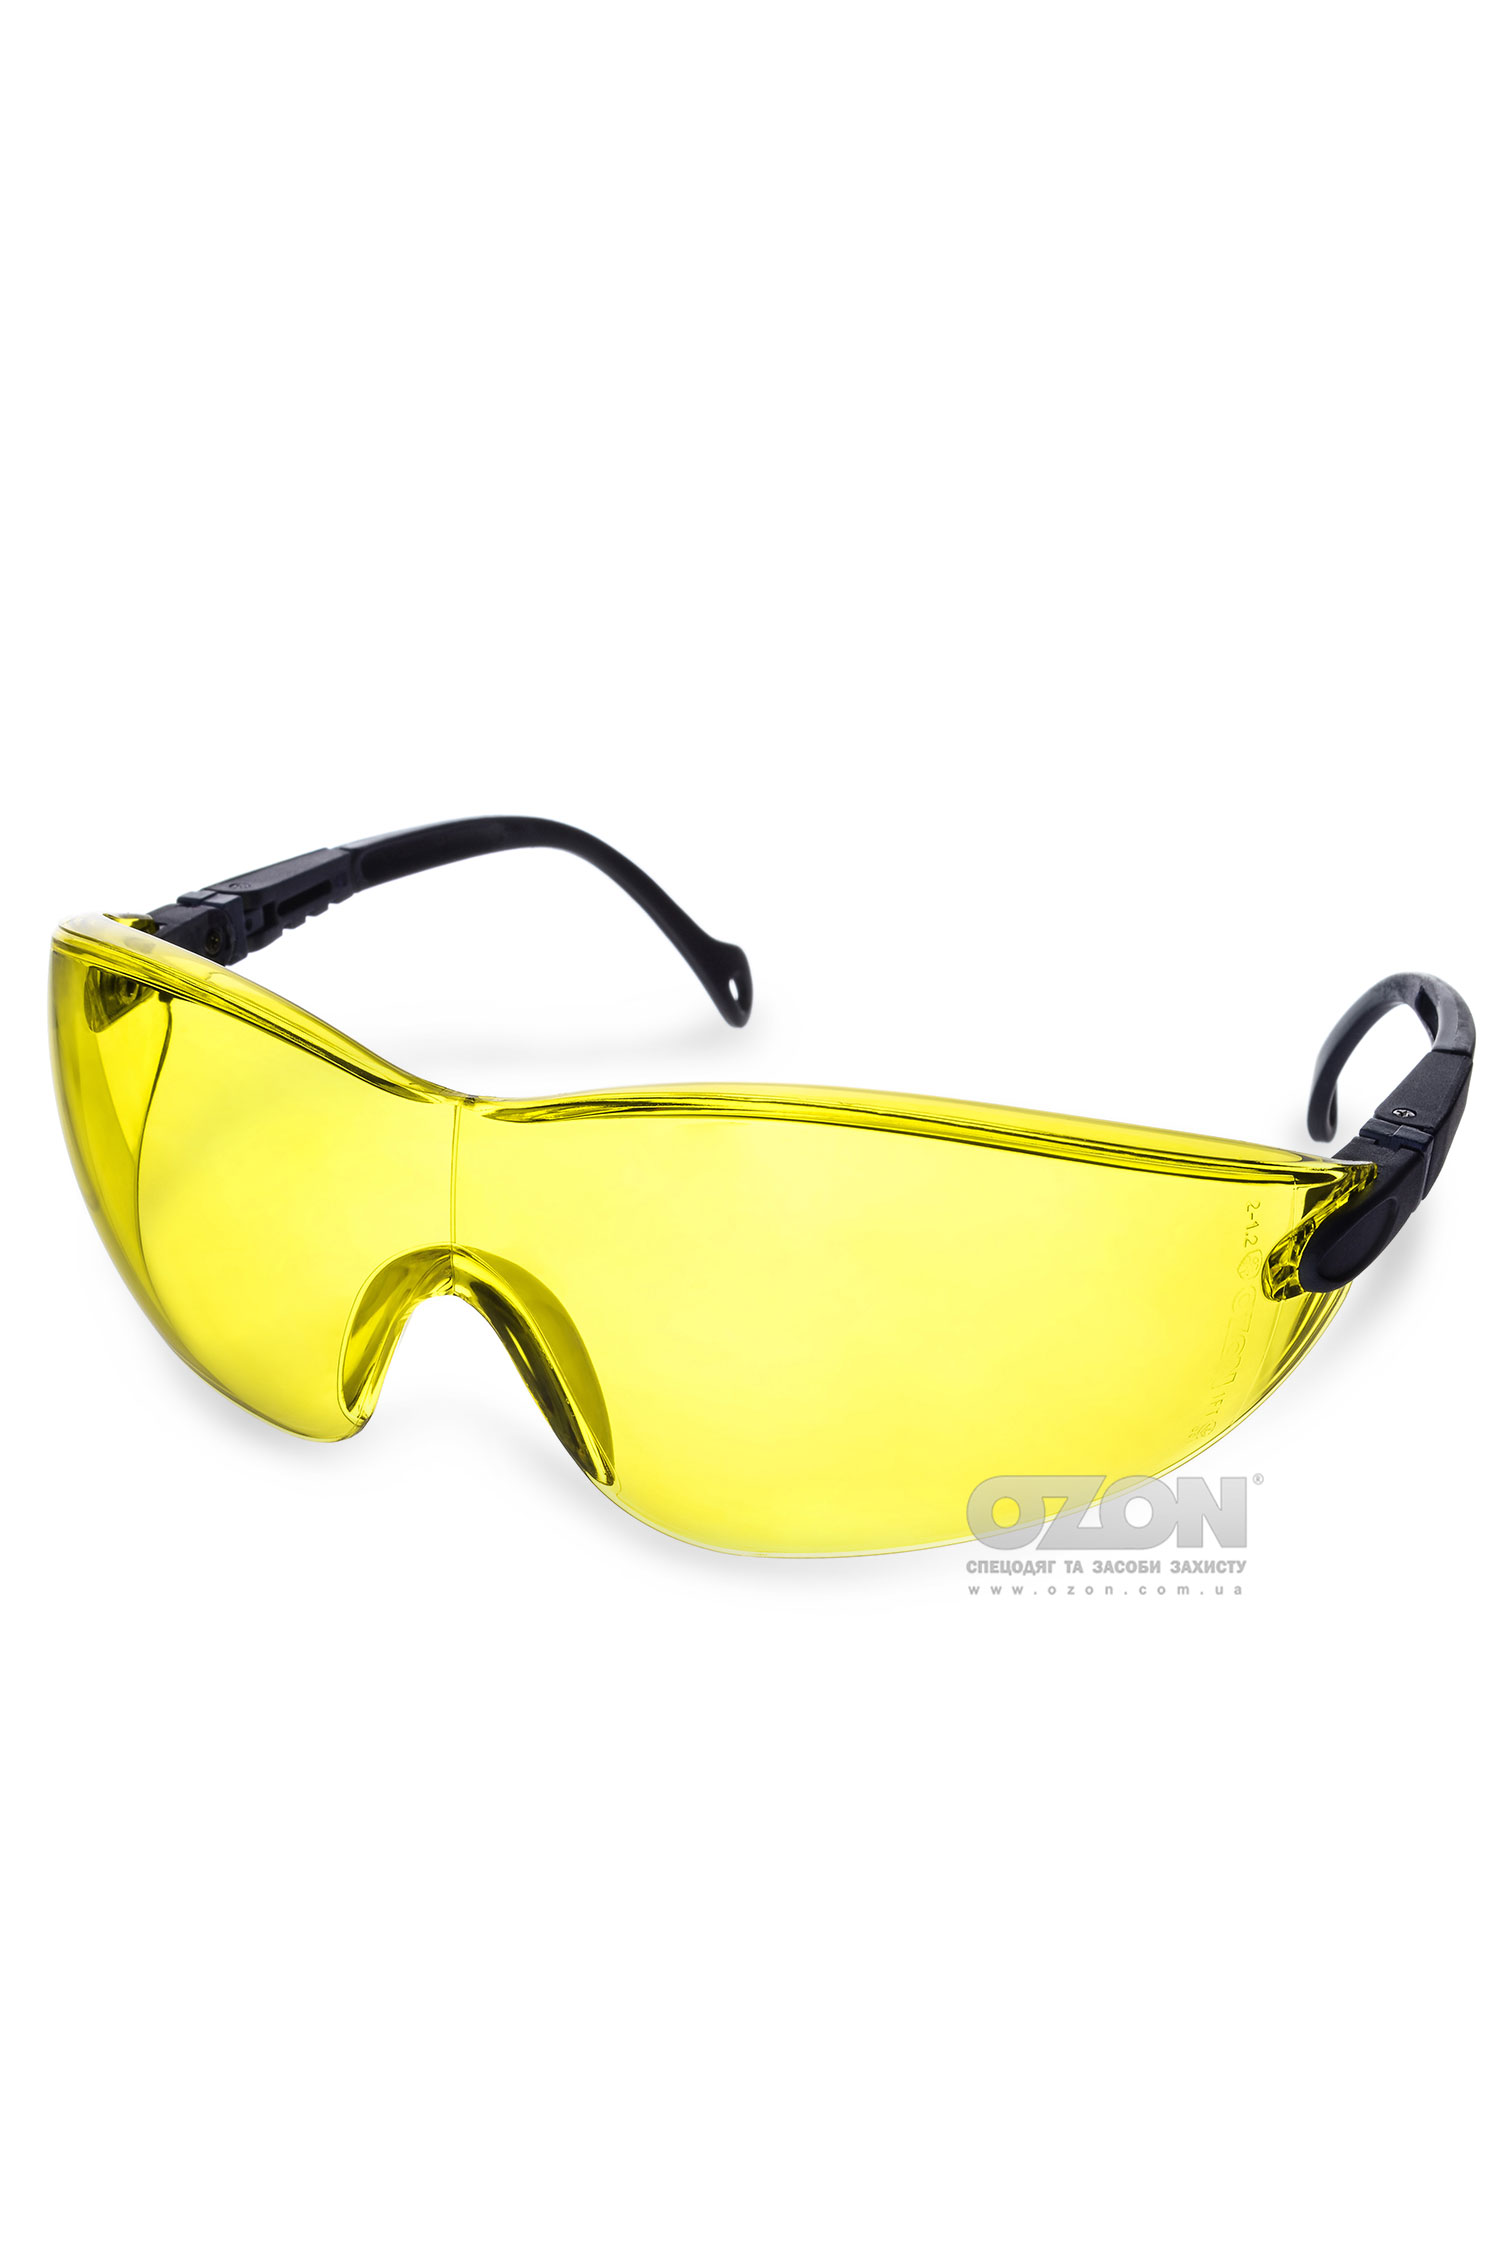 Захисні окуляри OZON™ 7-051, жовті - Фото 1